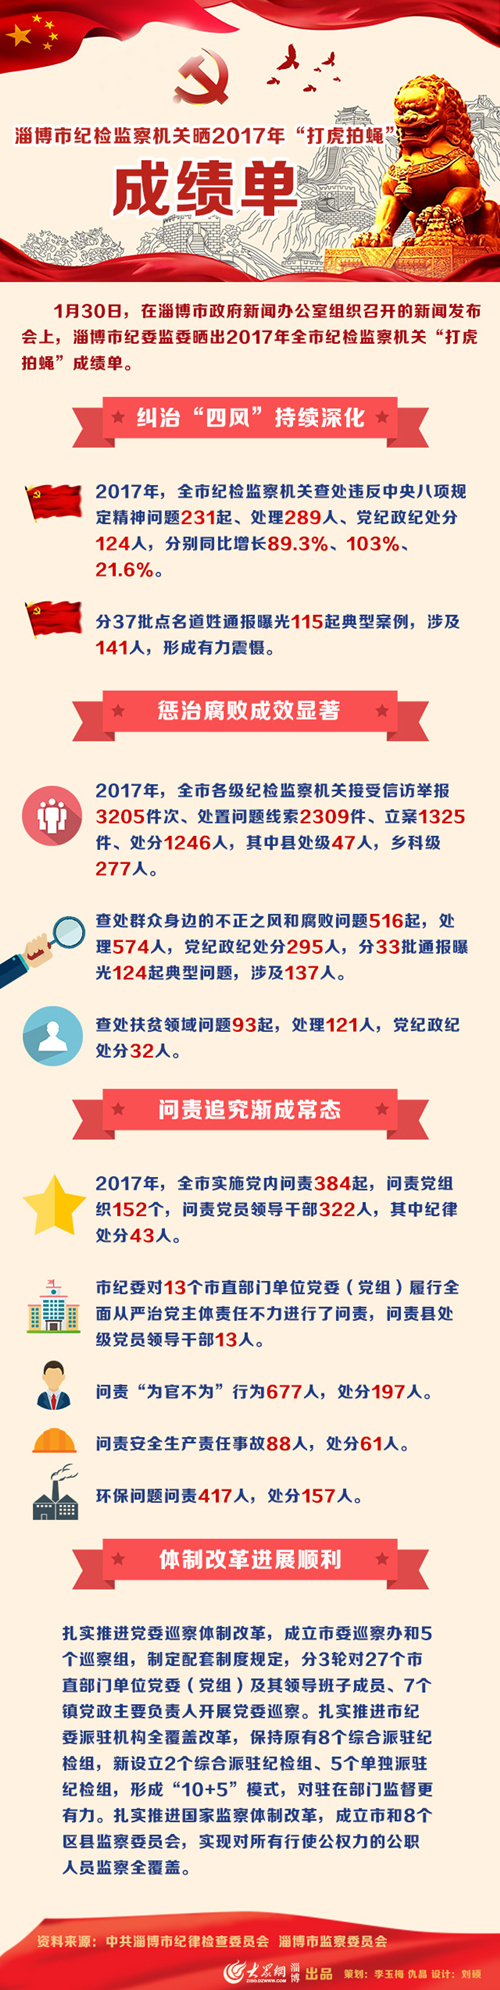 淄博市纪检监察机关晒2017年“打虎拍蝇”成绩单